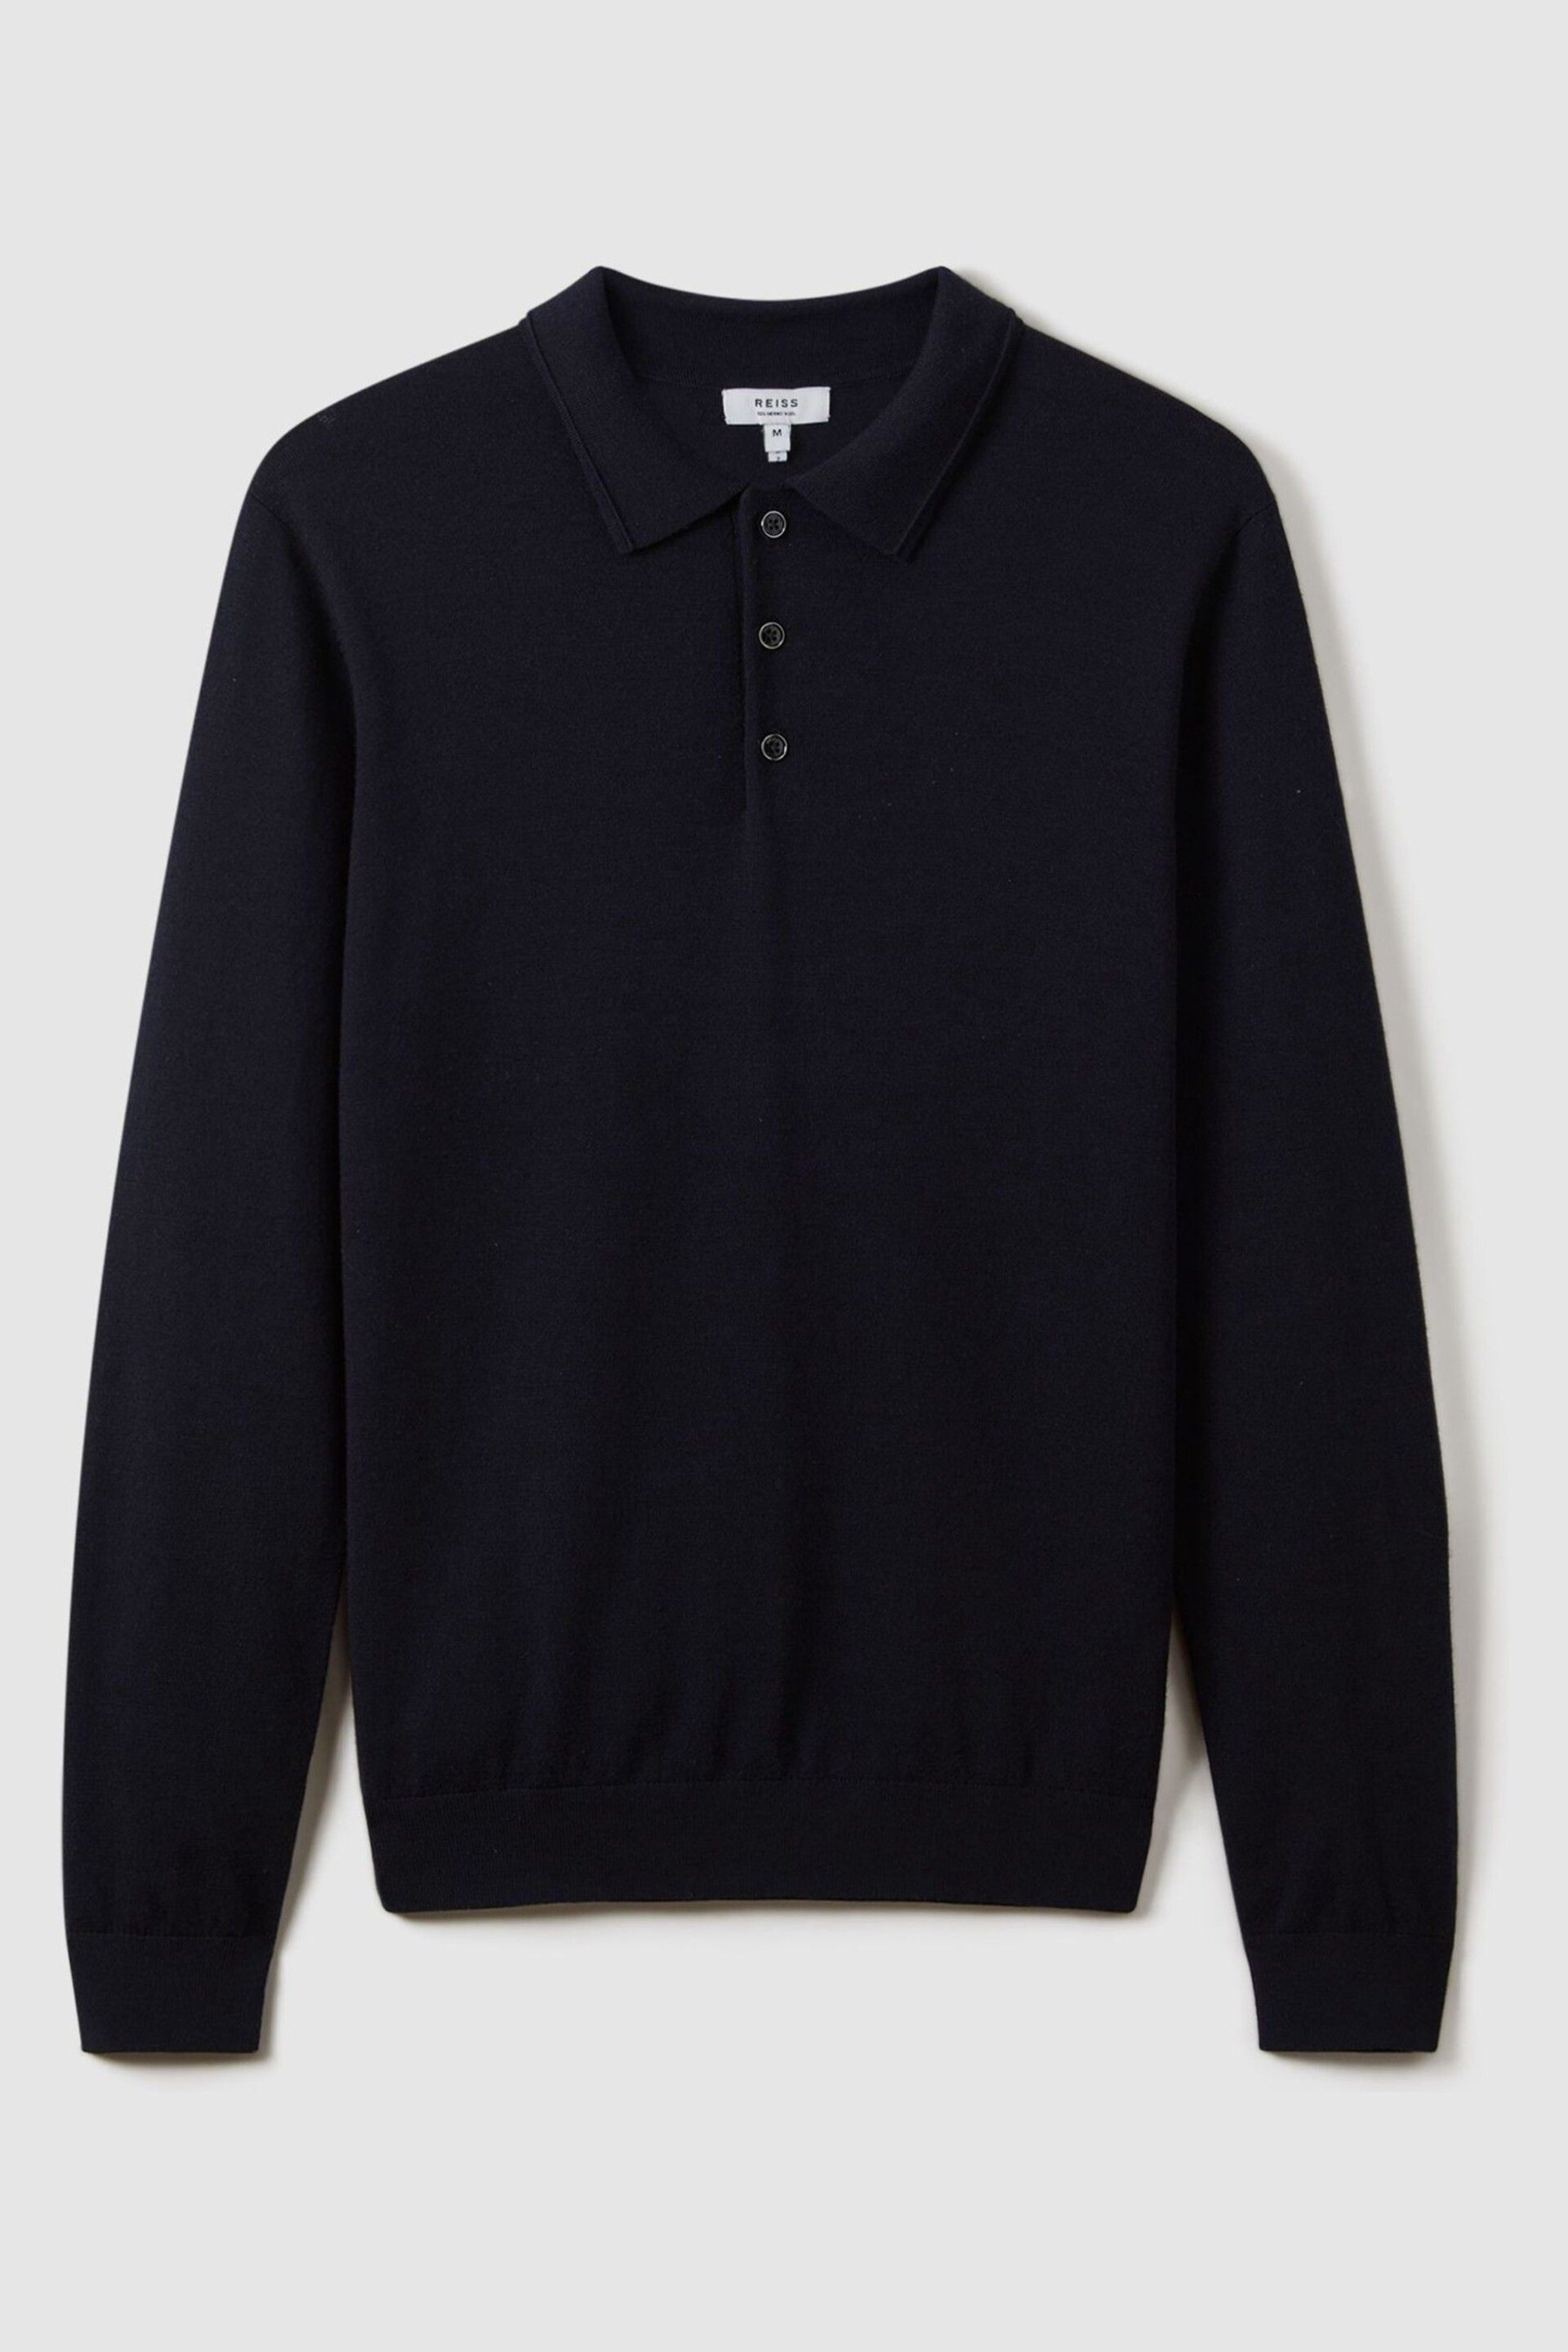 Reiss Navy Trafford Merino Wool Polo Shirt - Image 2 of 5